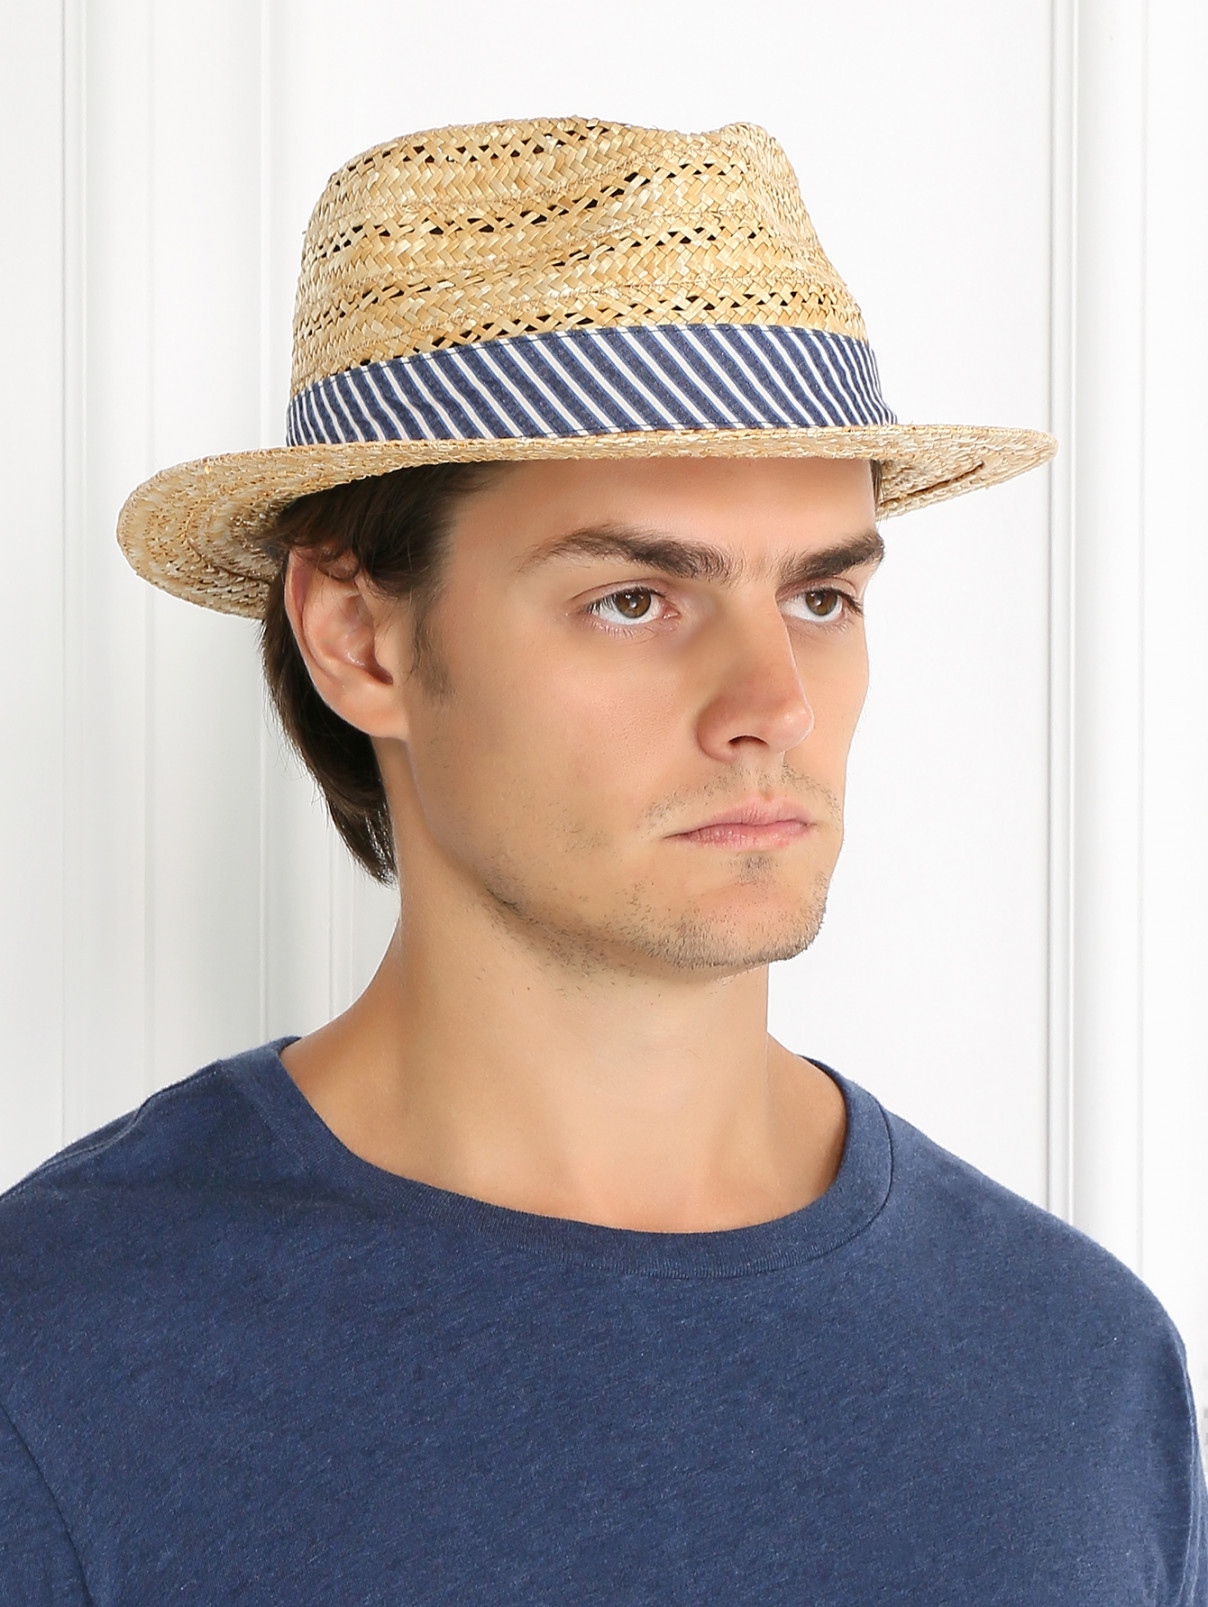 Шляпа соломенная с контрастной вставкой Stetson  –  Модель Общий вид  – Цвет:  Бежевый